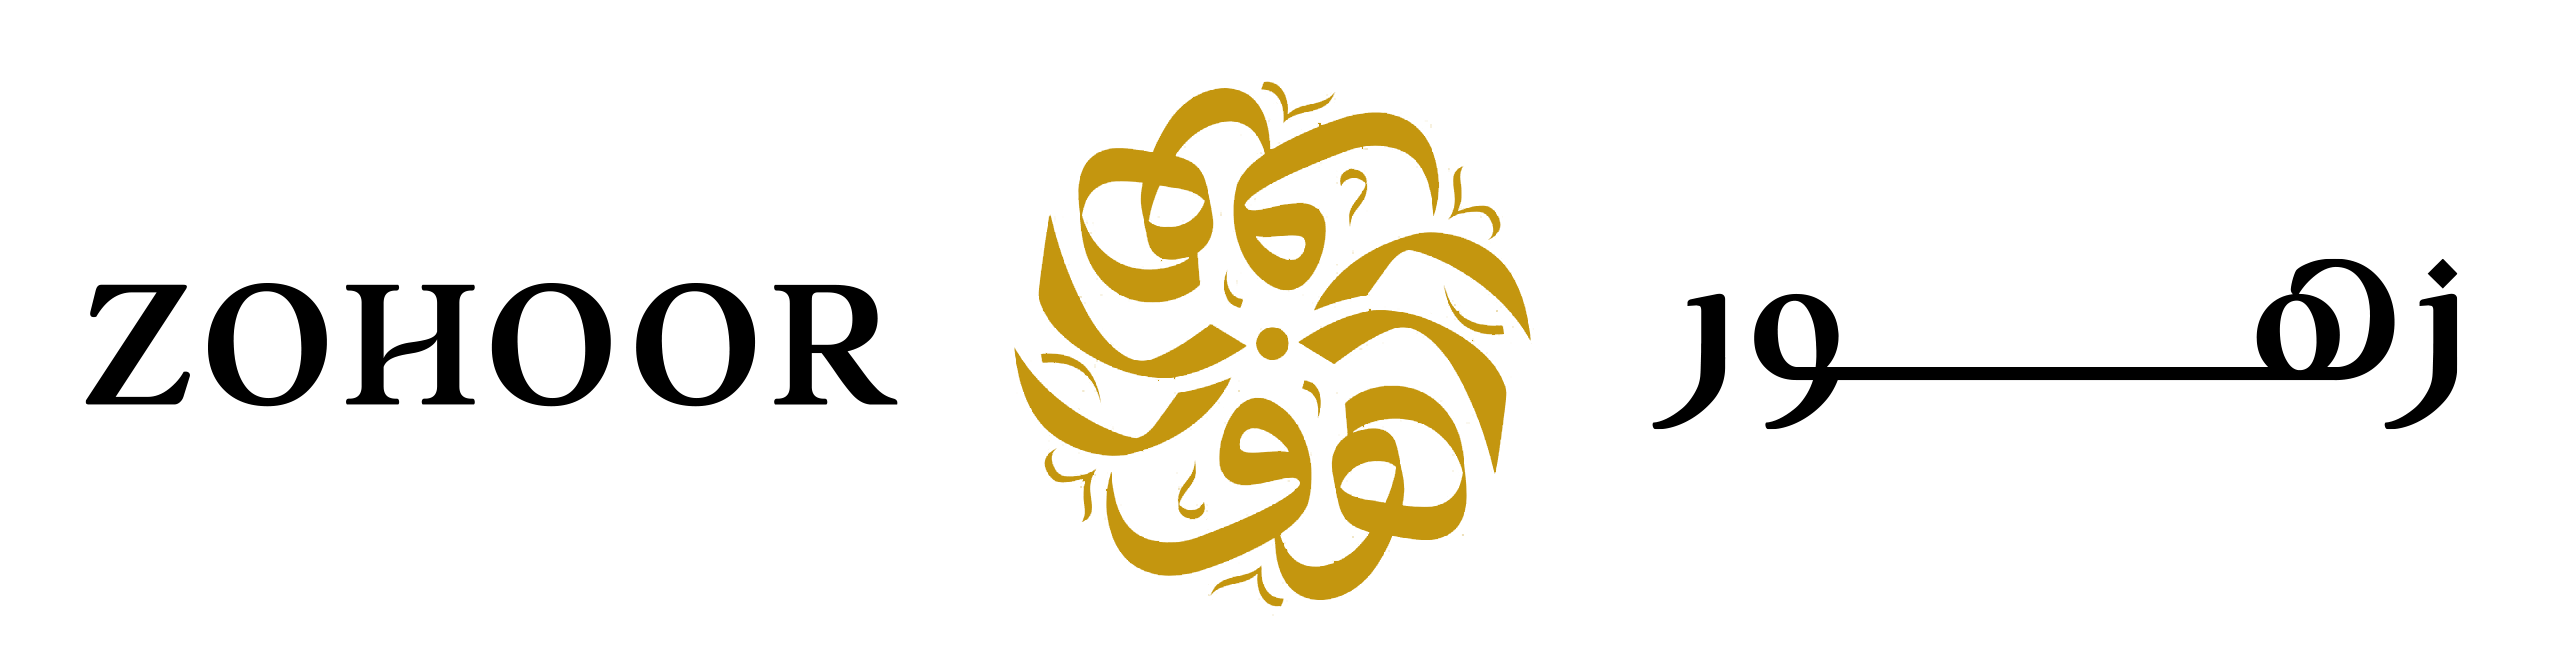 1655051762zoohoor Alreef logo.png